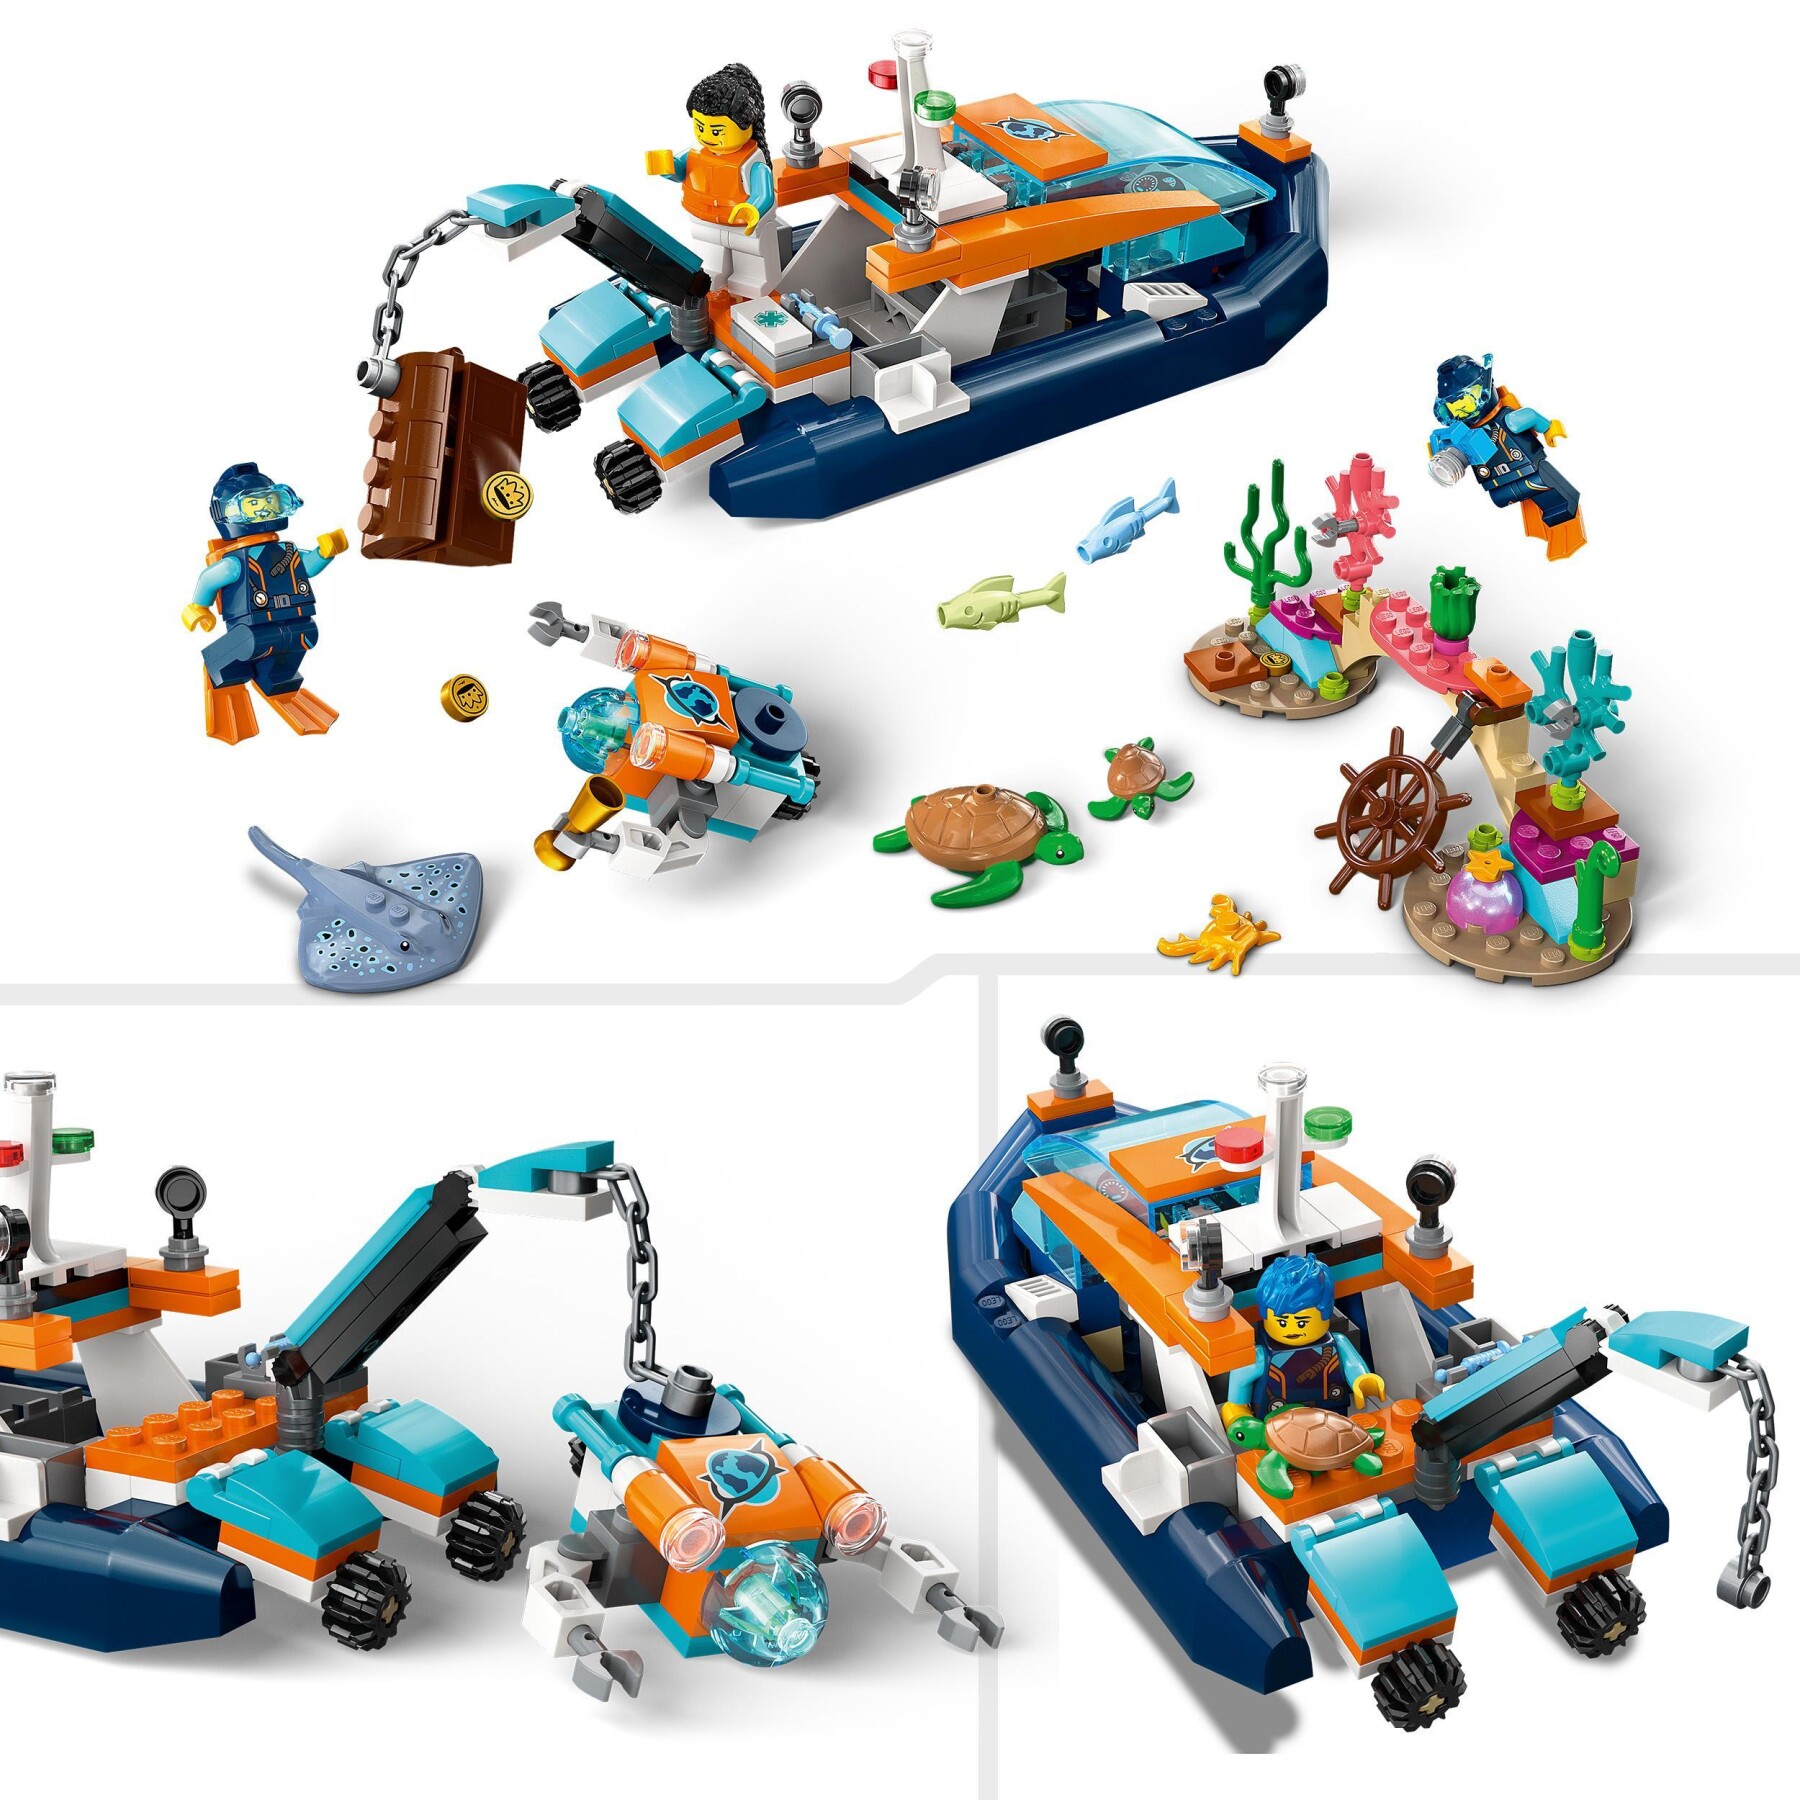 Lego city 60377 batiscafo artico, barca giocattolo con mini-sottomarino e animali marini: squalo, granchio, tartaruga e manta - LEGO CITY